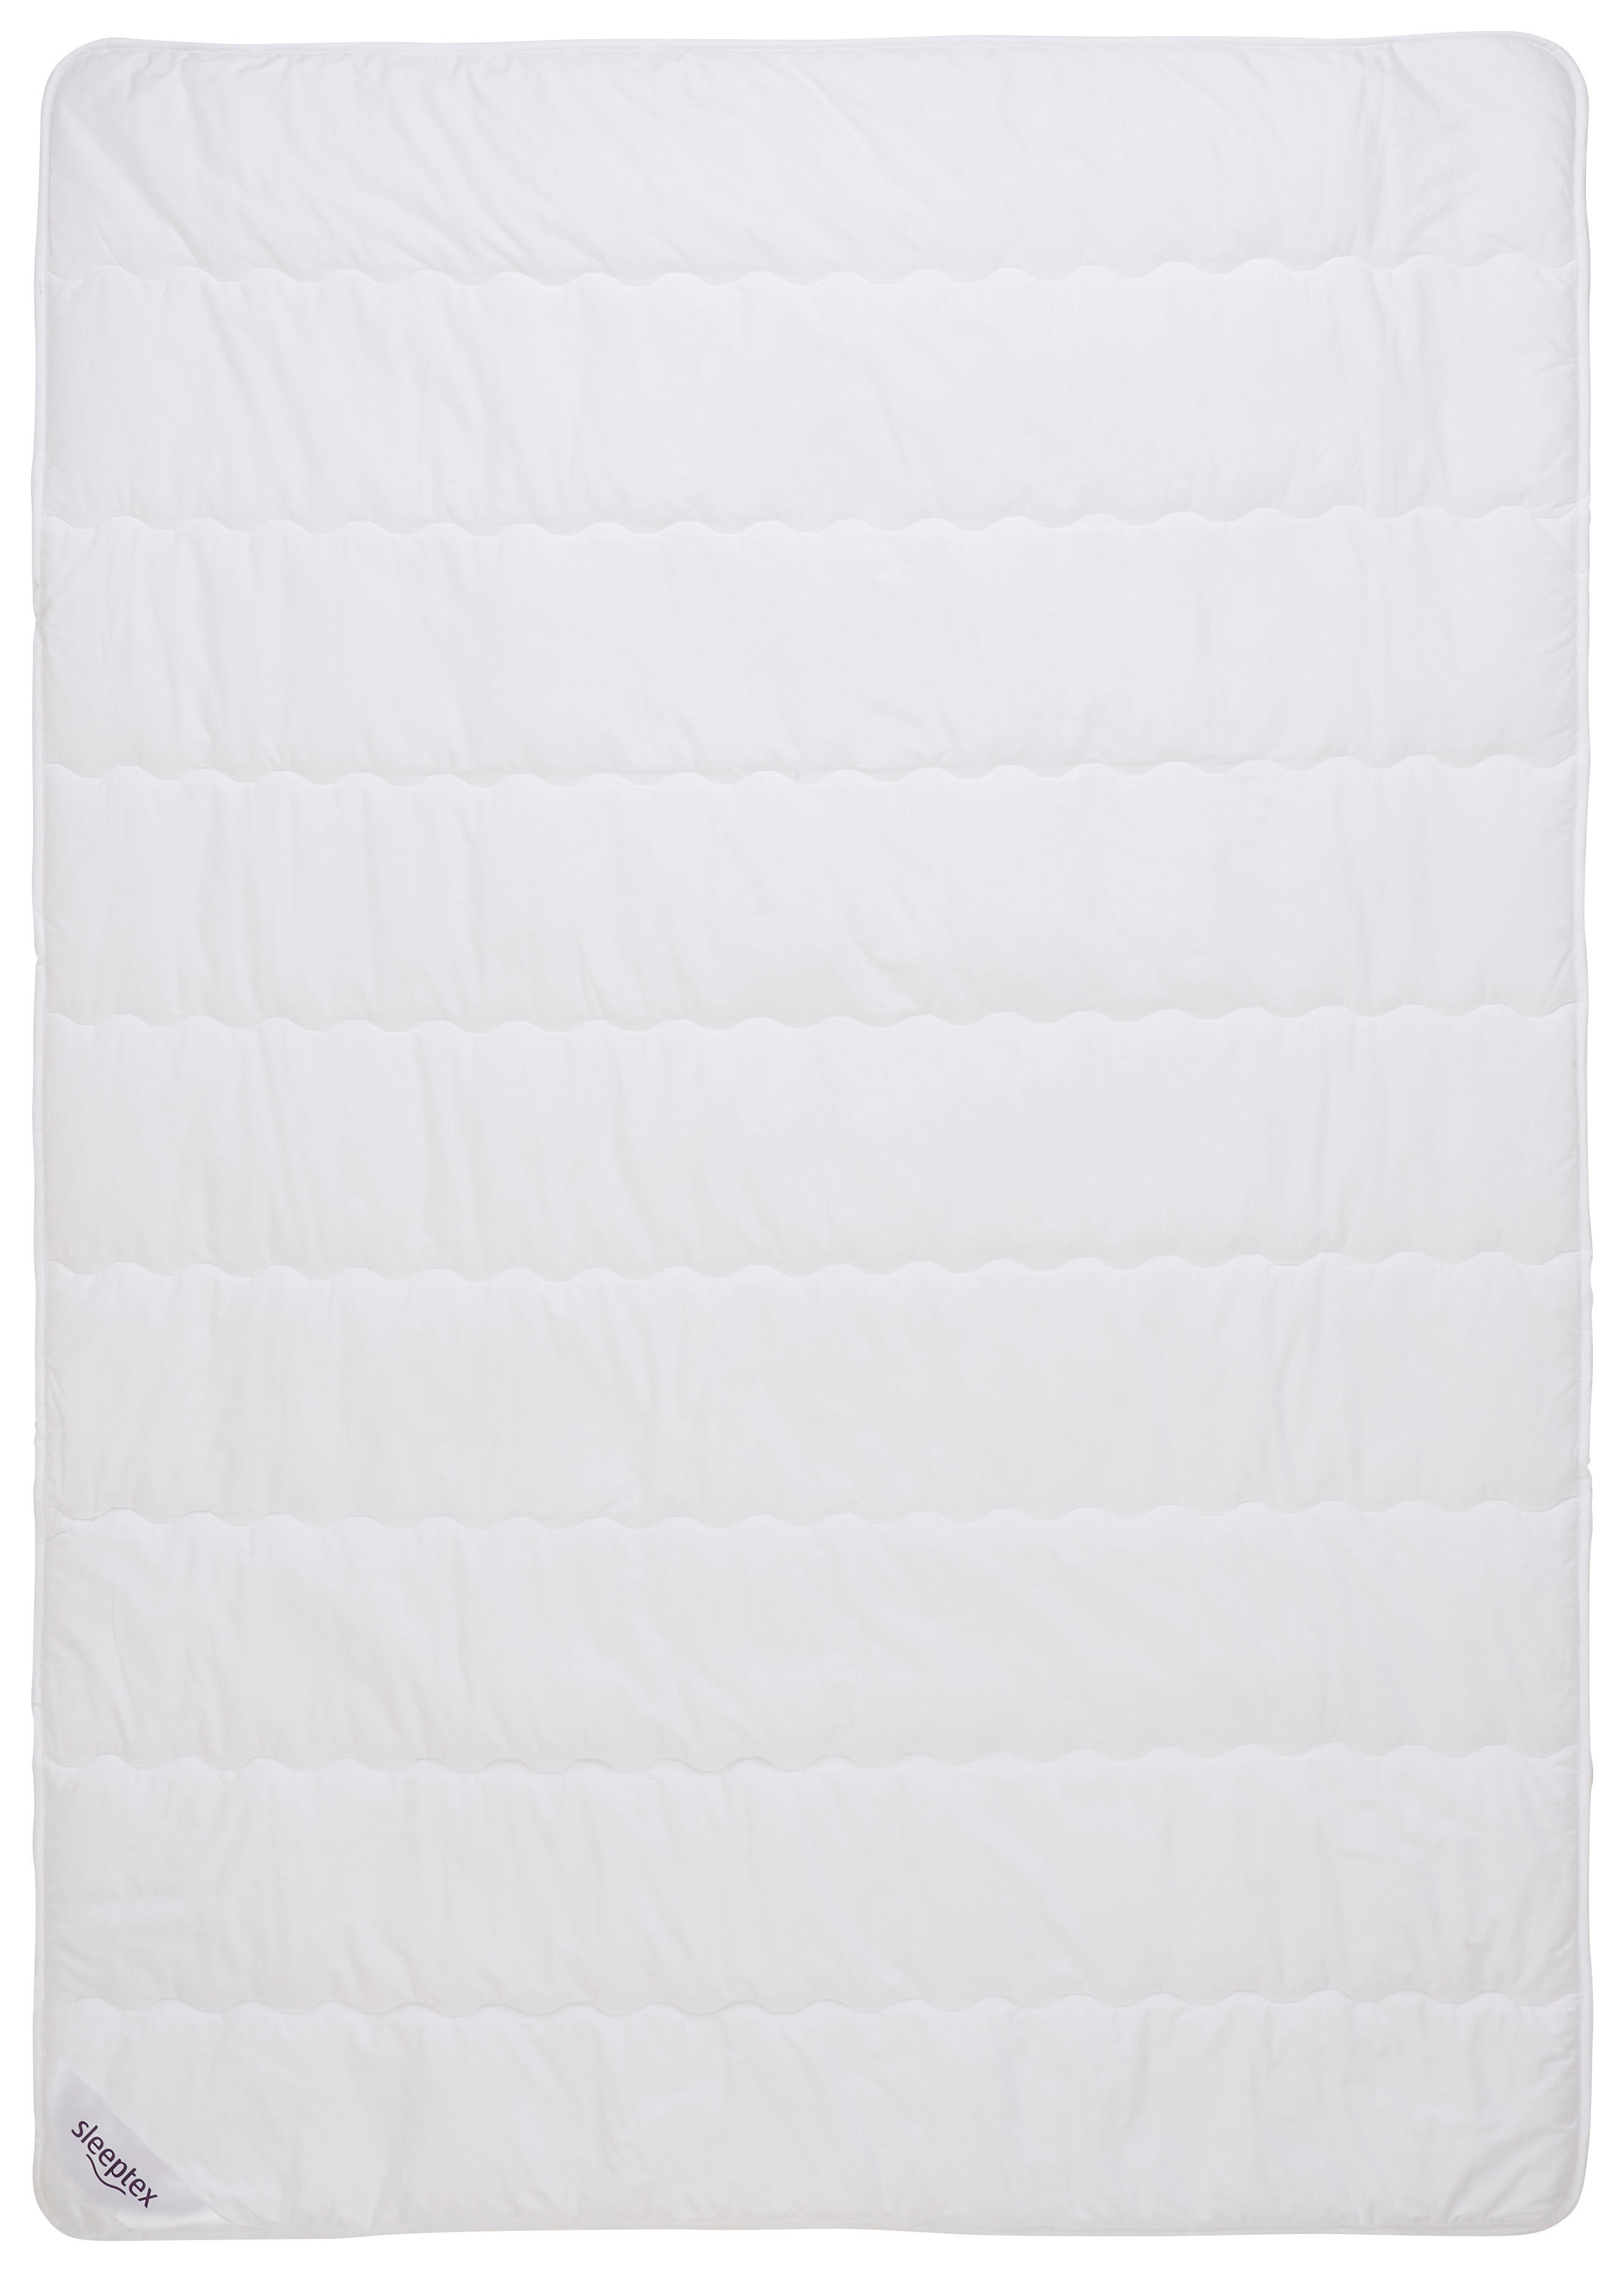 Sleeptex LETNÍ PŘIKRÝVKA, 140/220 cm, polyester, rouno, duté vlákno - bílá - polyester, rouno, duté 